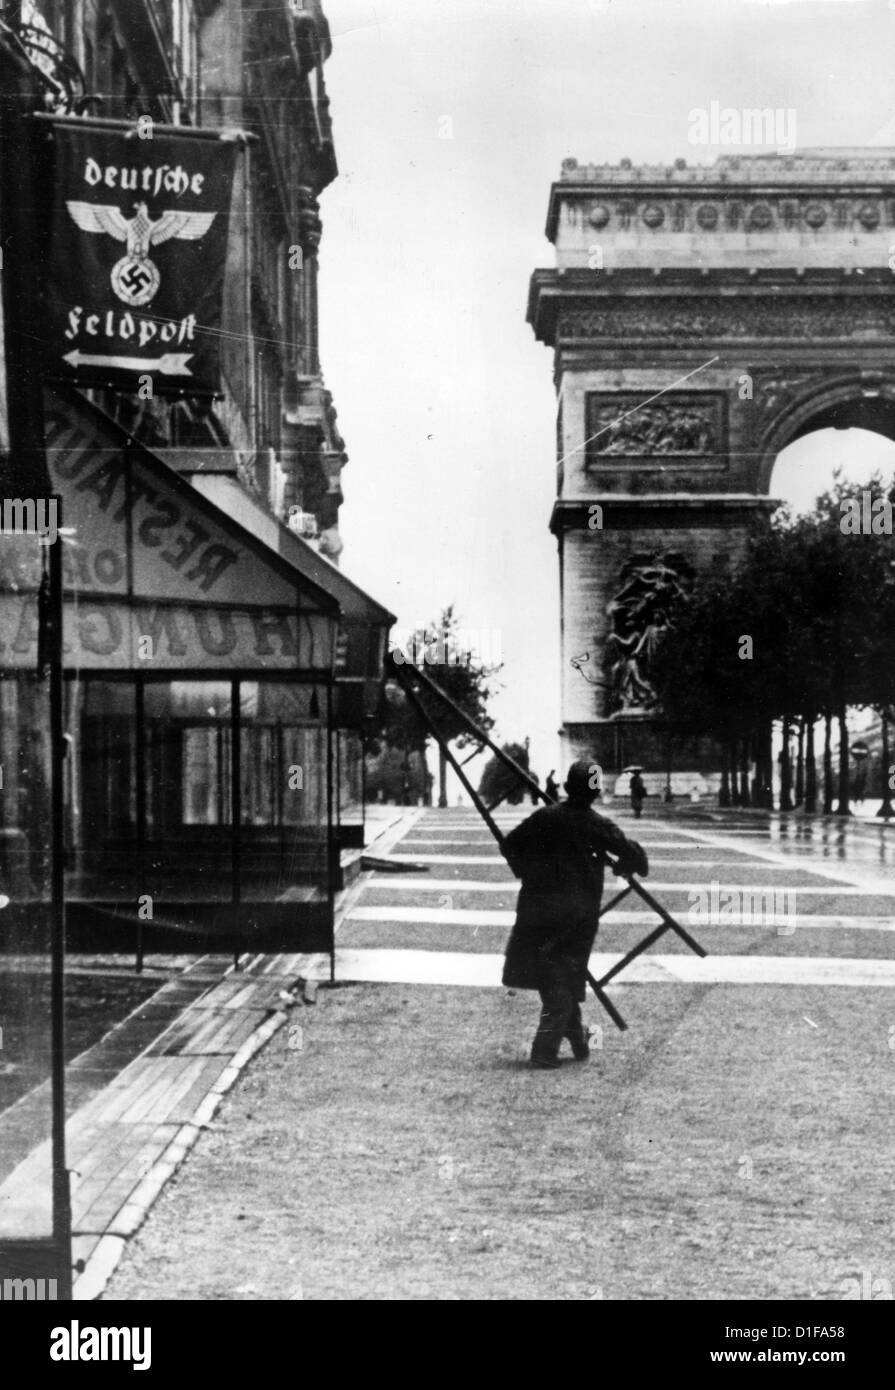 Una bandiera con una svastica e un'aquila federale tedesca segna l'ingresso dell'ufficio postale dell'esercito tedesco vicino all'Arco di Trionfo a Parigi, in Francia, nel luglio 1940. Fotoarchiv für Zeitgeschichte Foto Stock